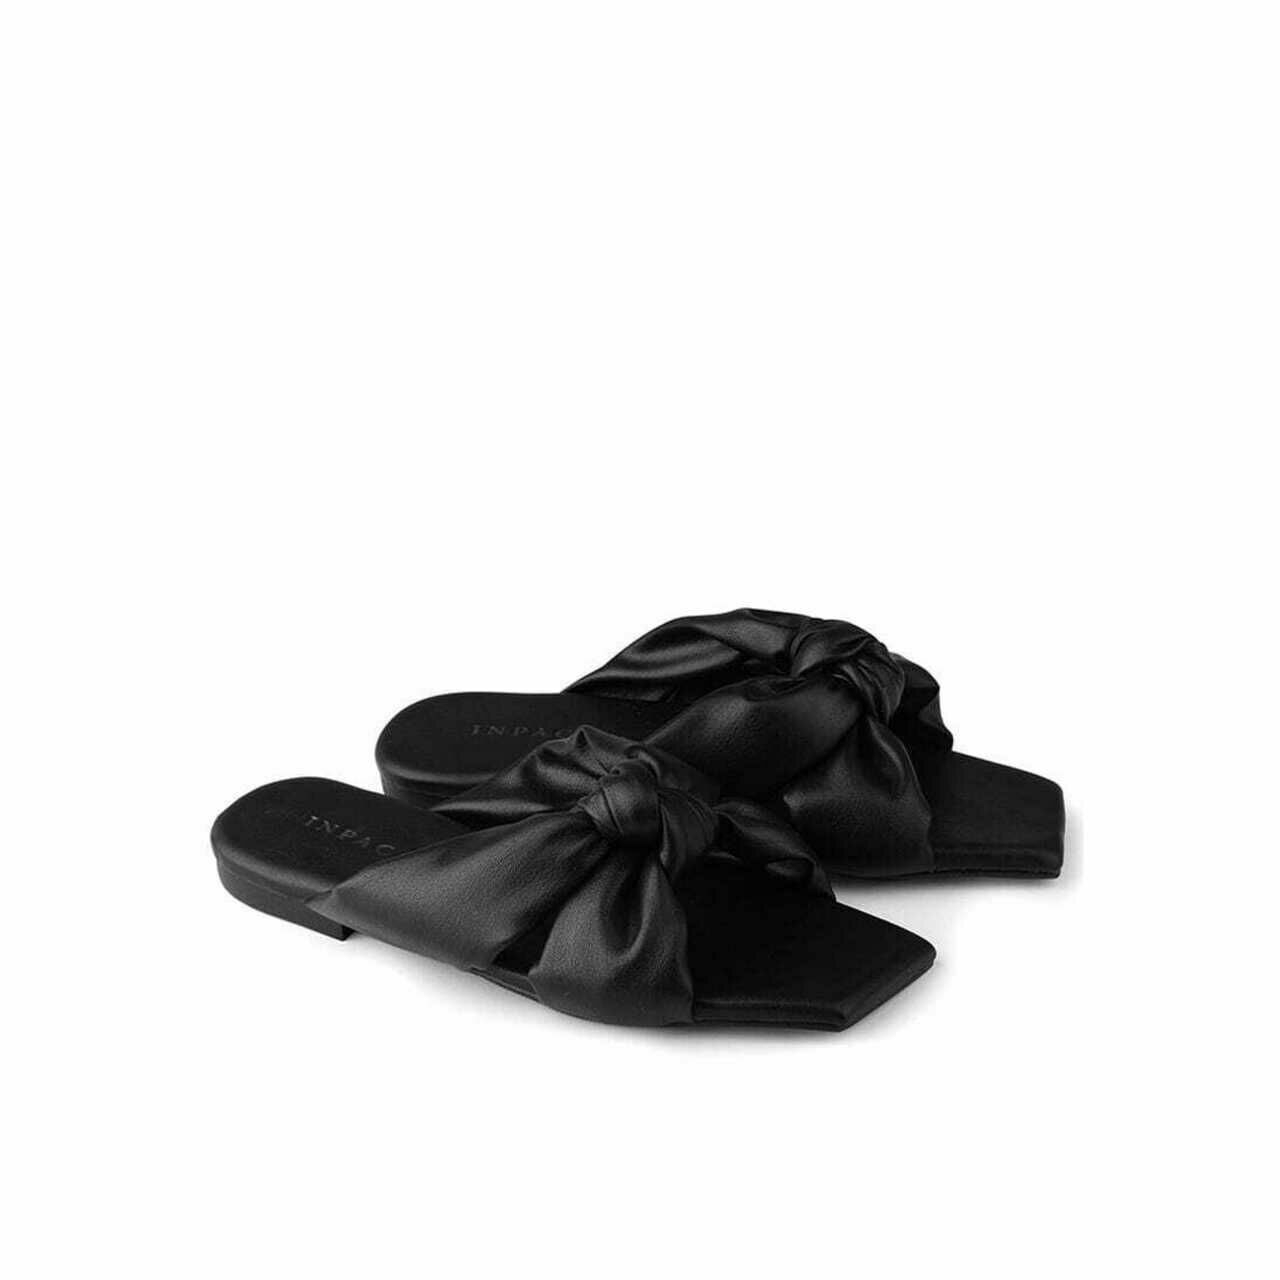 INPACA Black Sandals